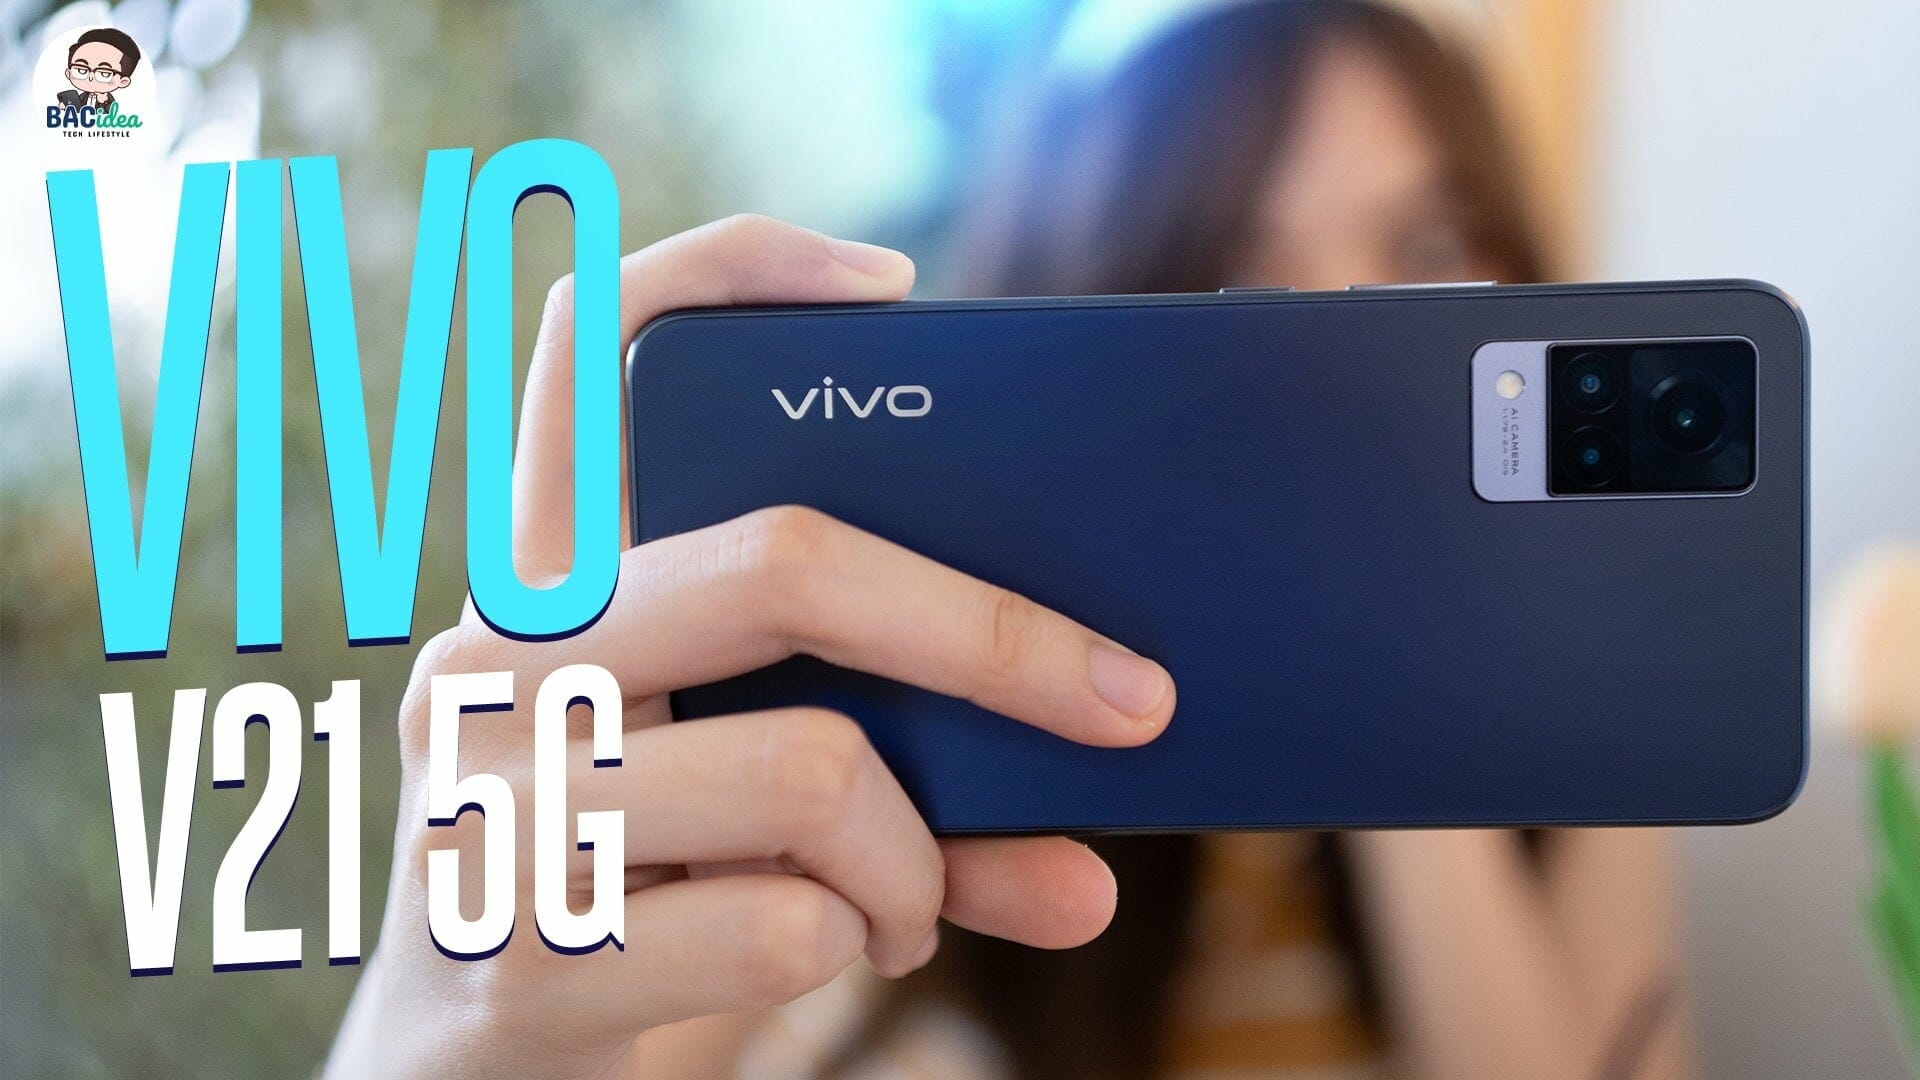 รีวิว Vivo V21 5G สมาร์ทโฟนที่กล้องหน้าดีเหมือนกล้องหลัง และแรมที่เป็นมากกว่าแรม 1